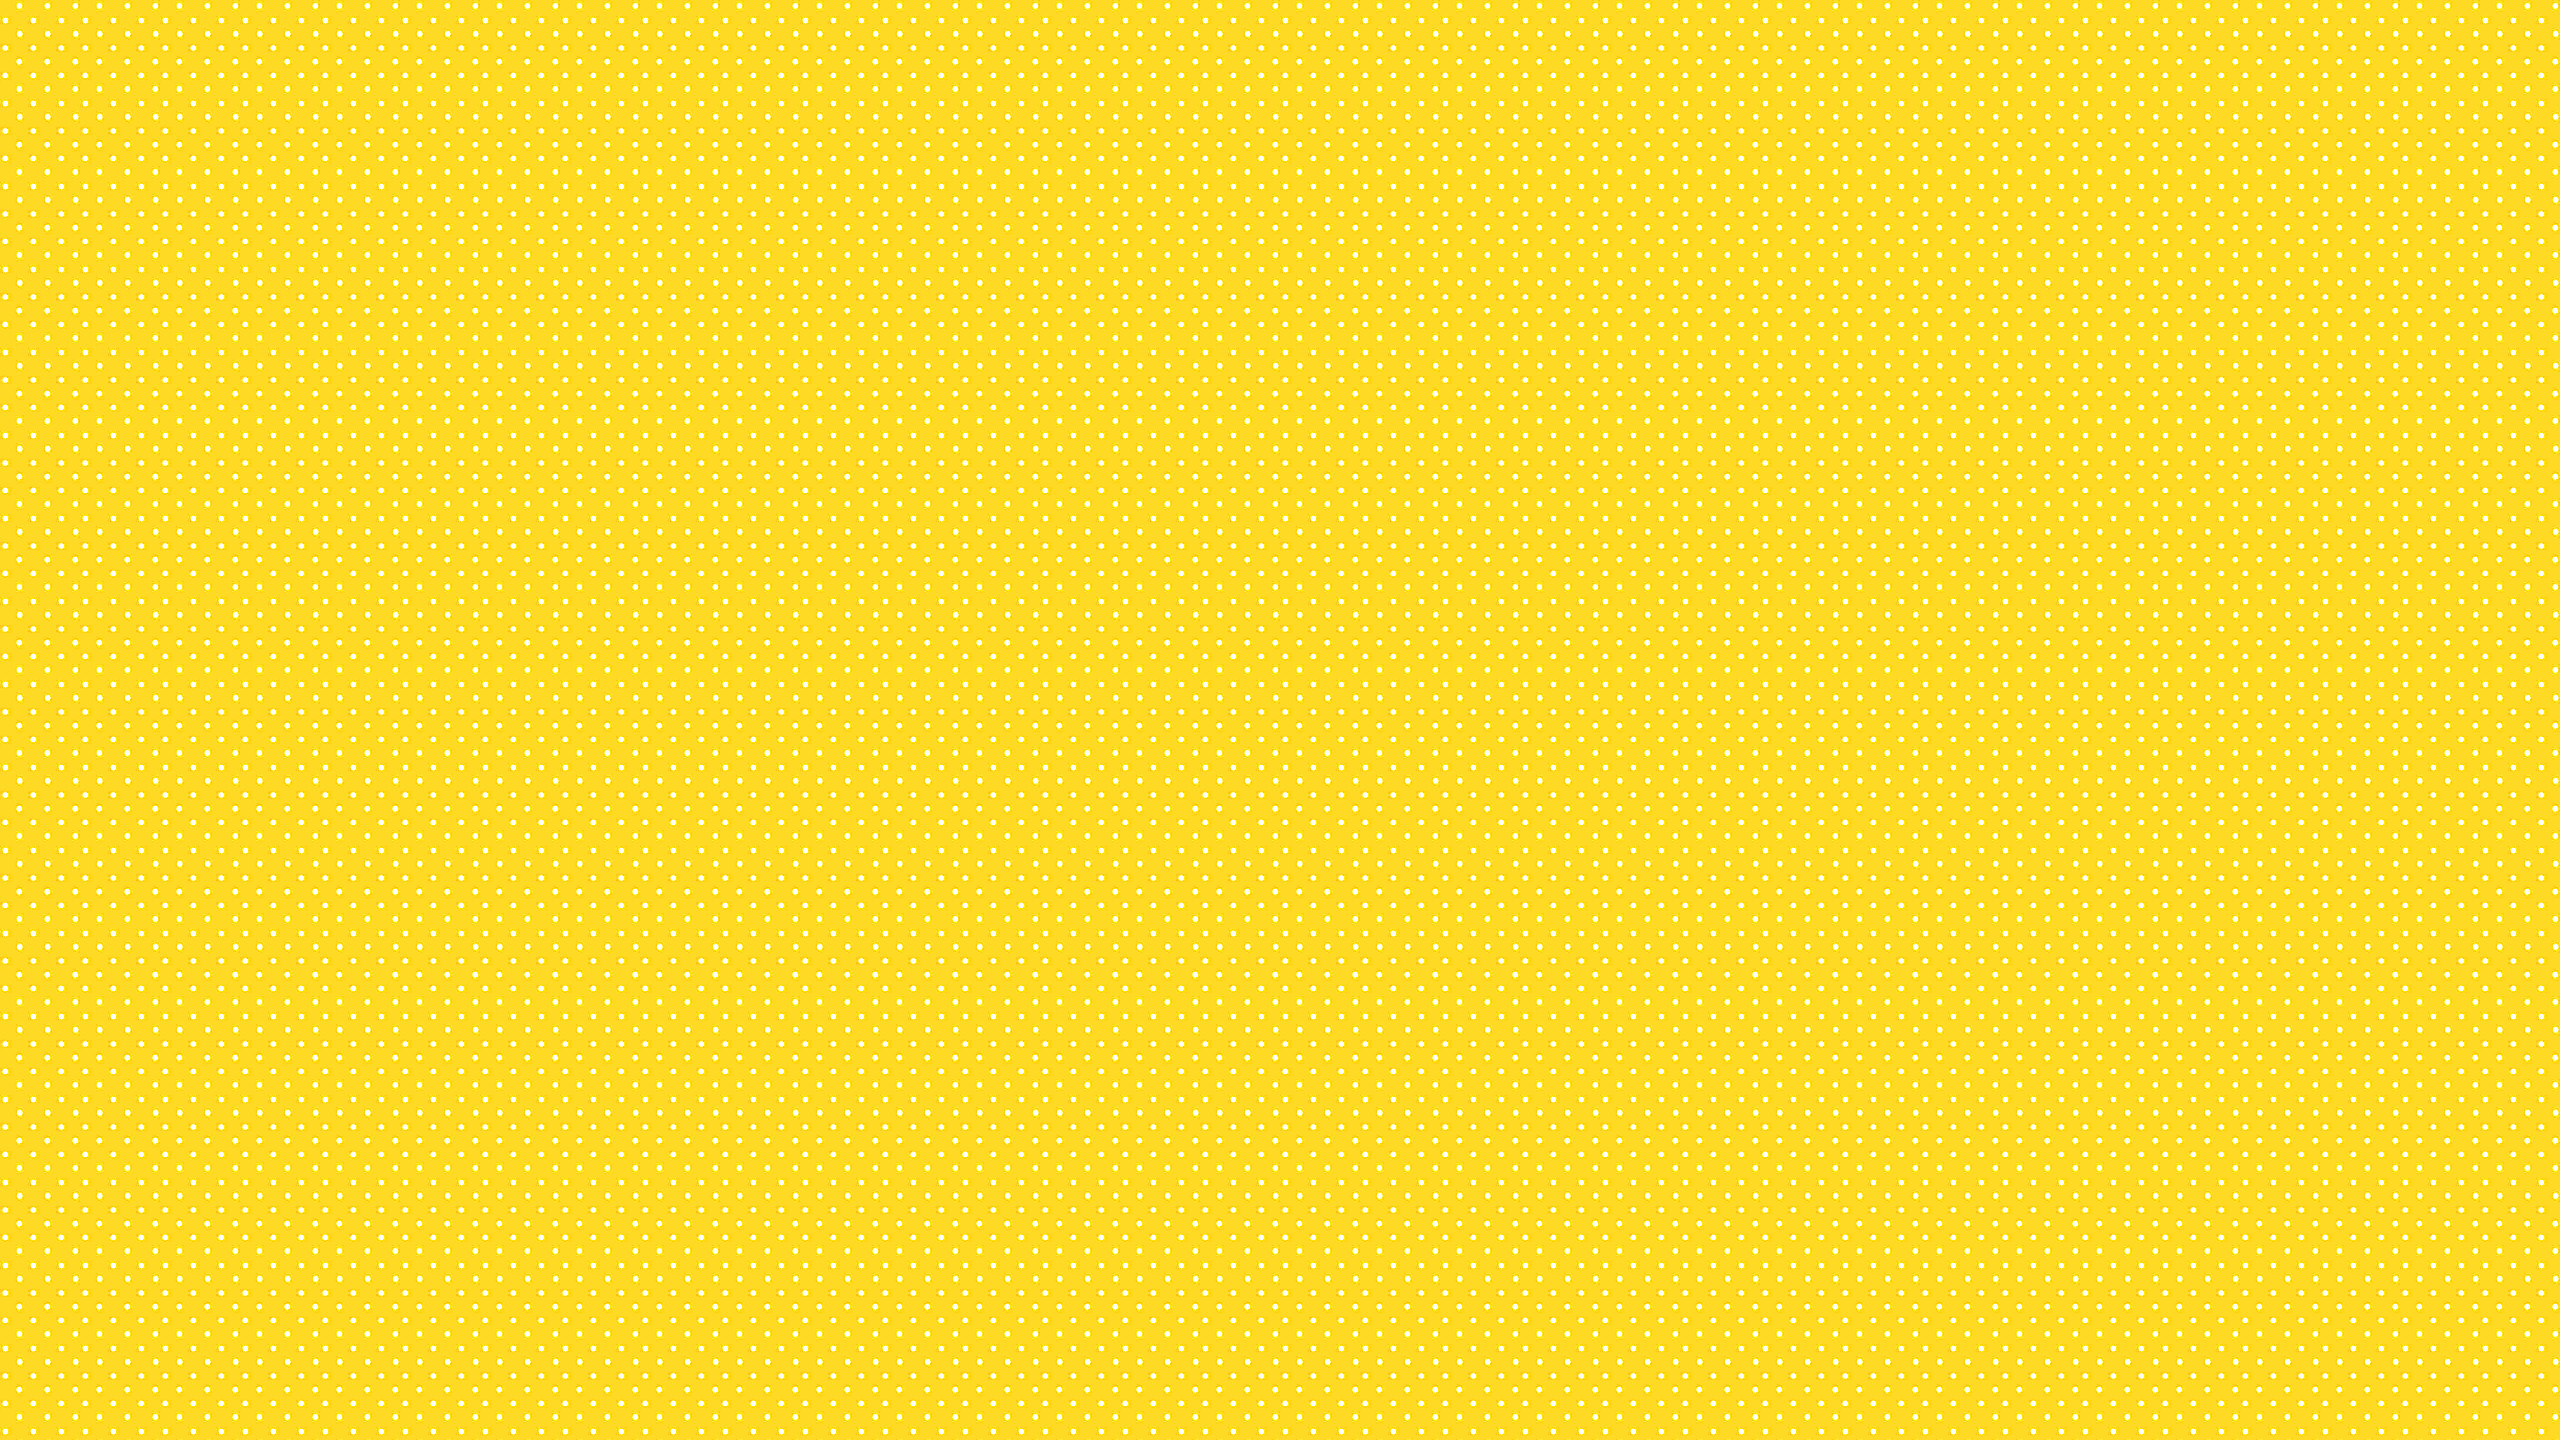 2560x1440 Yellow Desktop Backgrounds